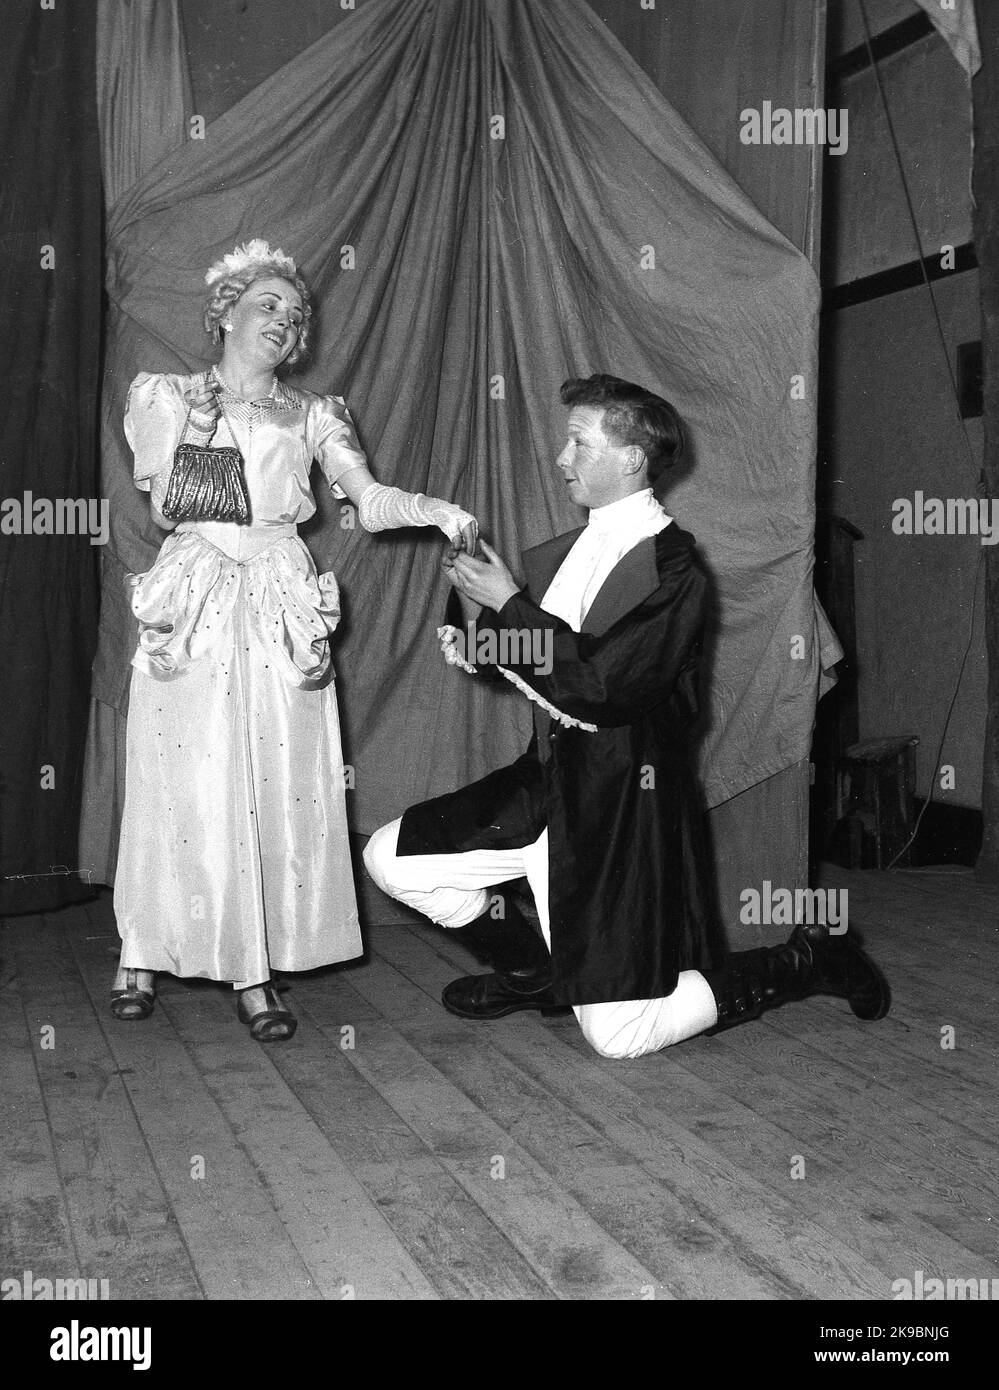 1955, storico, febbraio, una giovane donna e attori maschi nei loro costumi che appaiono nella pantomina, Robin Hood, Leeds, Inghilterra, UK. Posando sul palco per una foto, Foto Stock